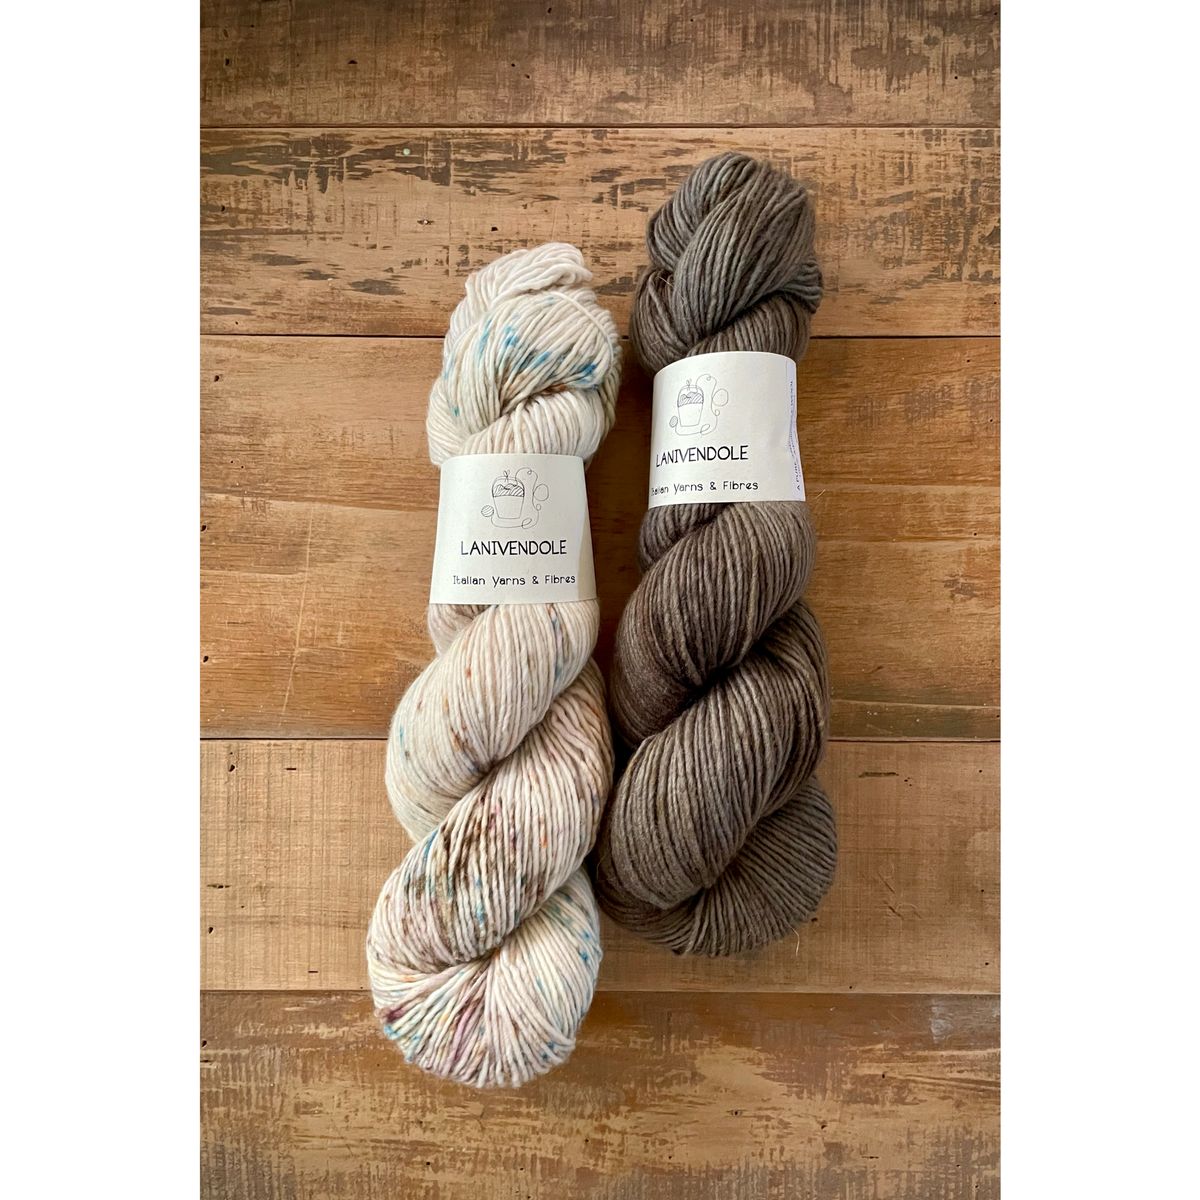 【線材故事】原生義大利小而精緻的手染線 Lanivendole- A Pure & Simple Wool系列